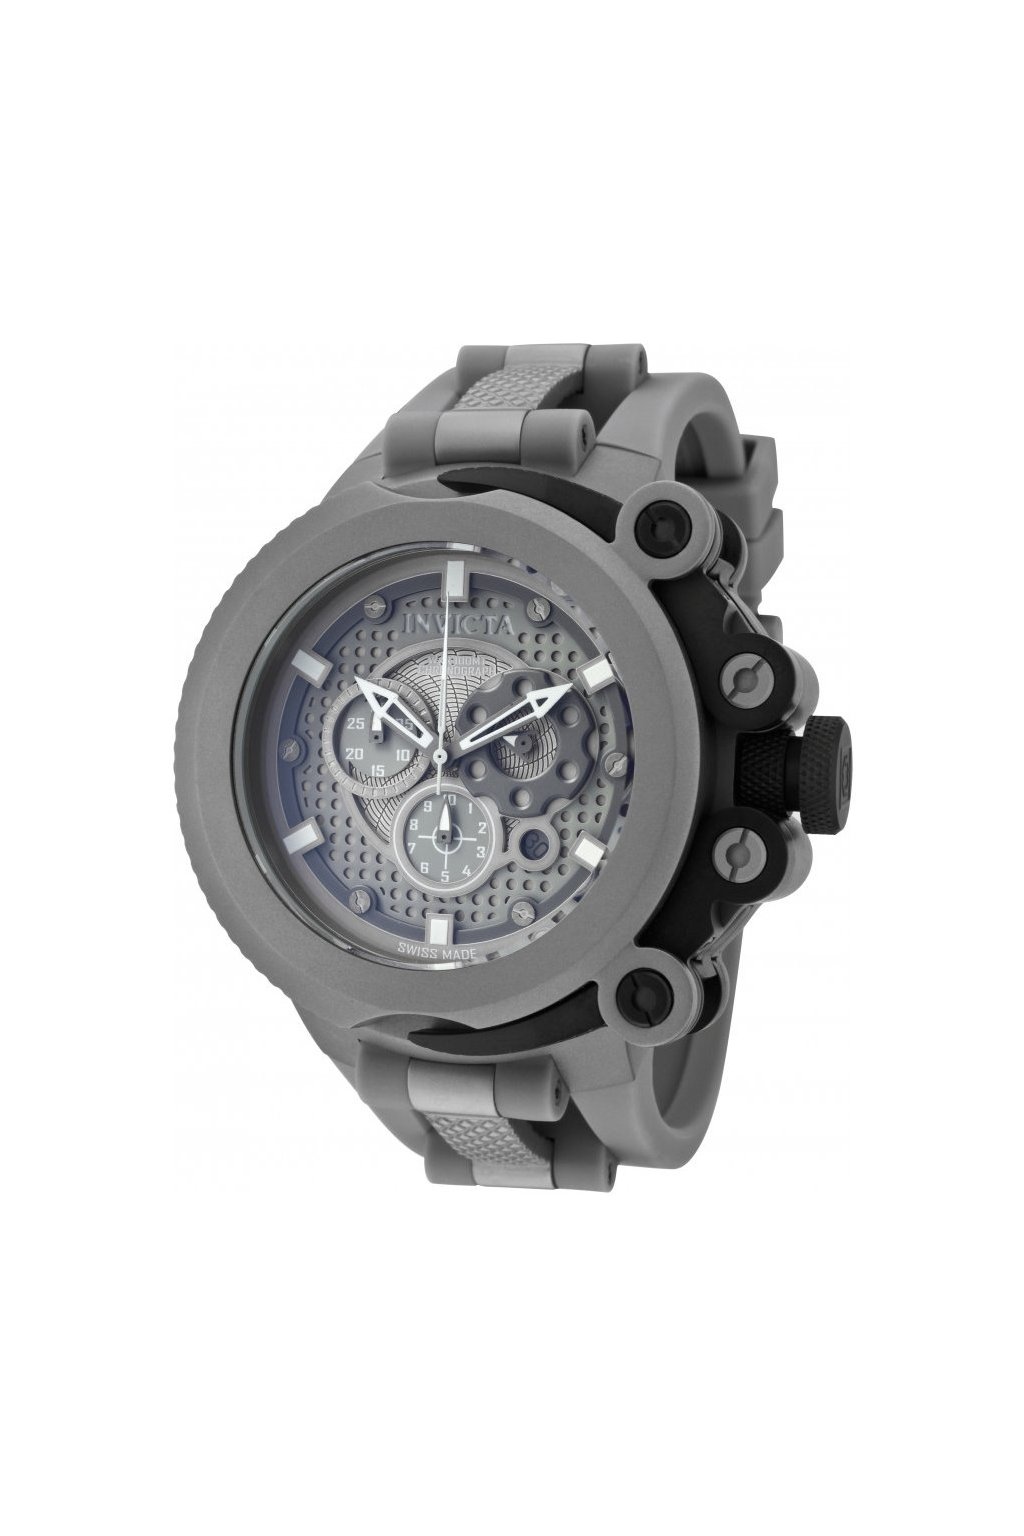 Pánské hodinky Invicta Coalition Forces Trigger 0958  + Kufr Invicta v hodnotě 1000 Kč ZDARMA